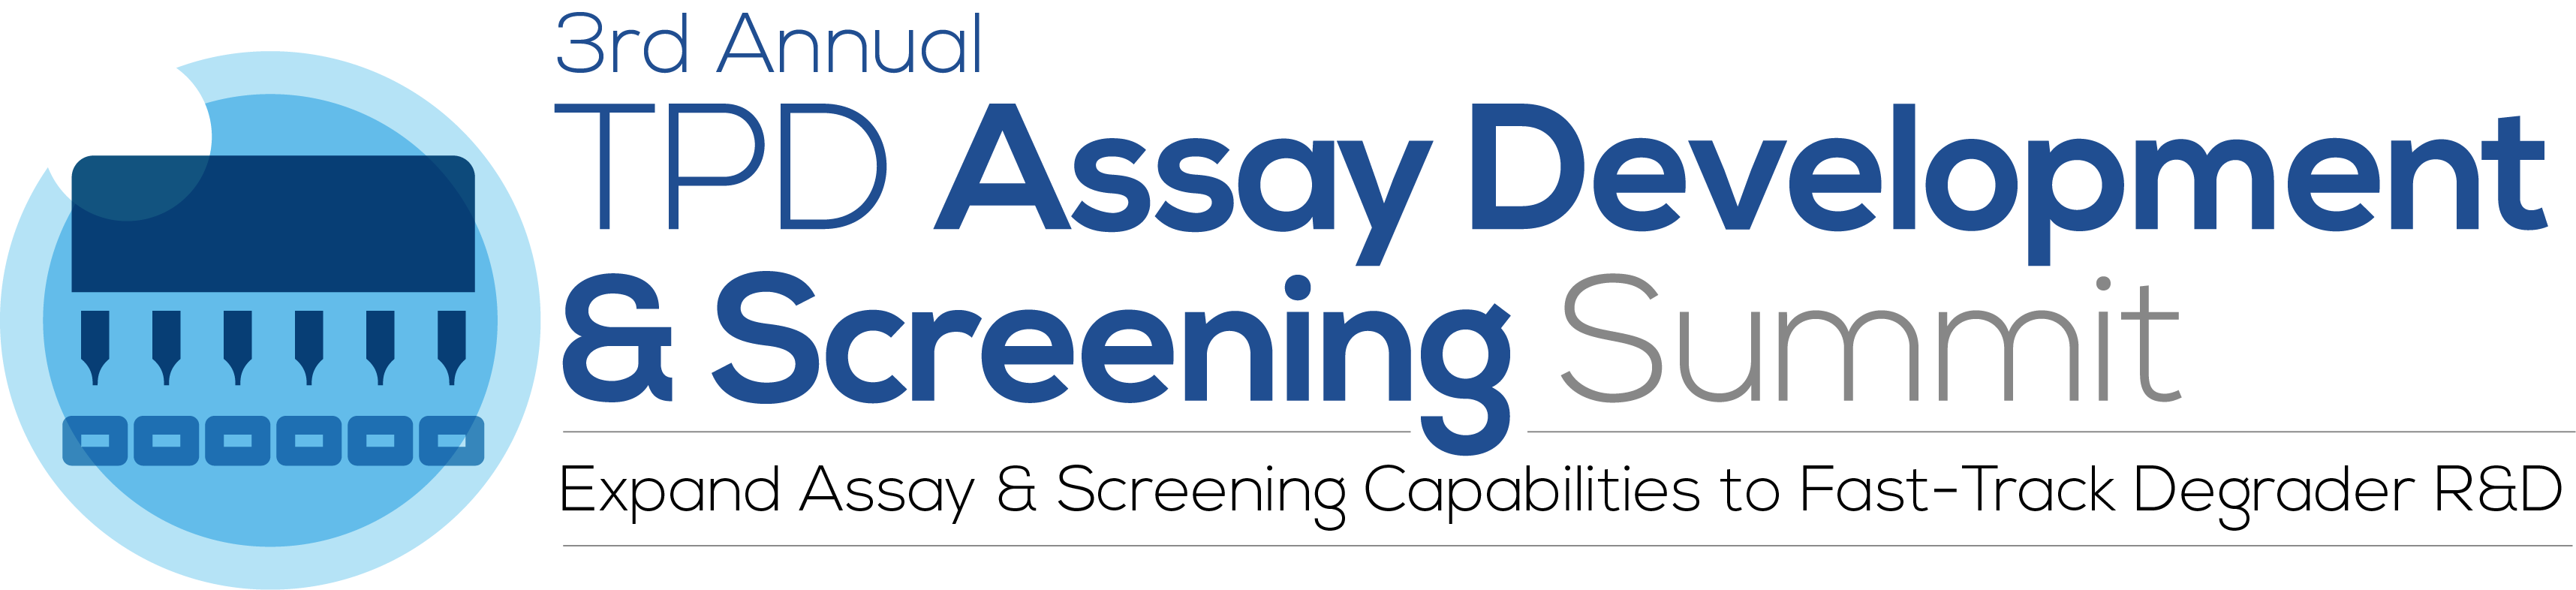 Next in Series - 3rd Annual TPD Assay Development & Screening Summit